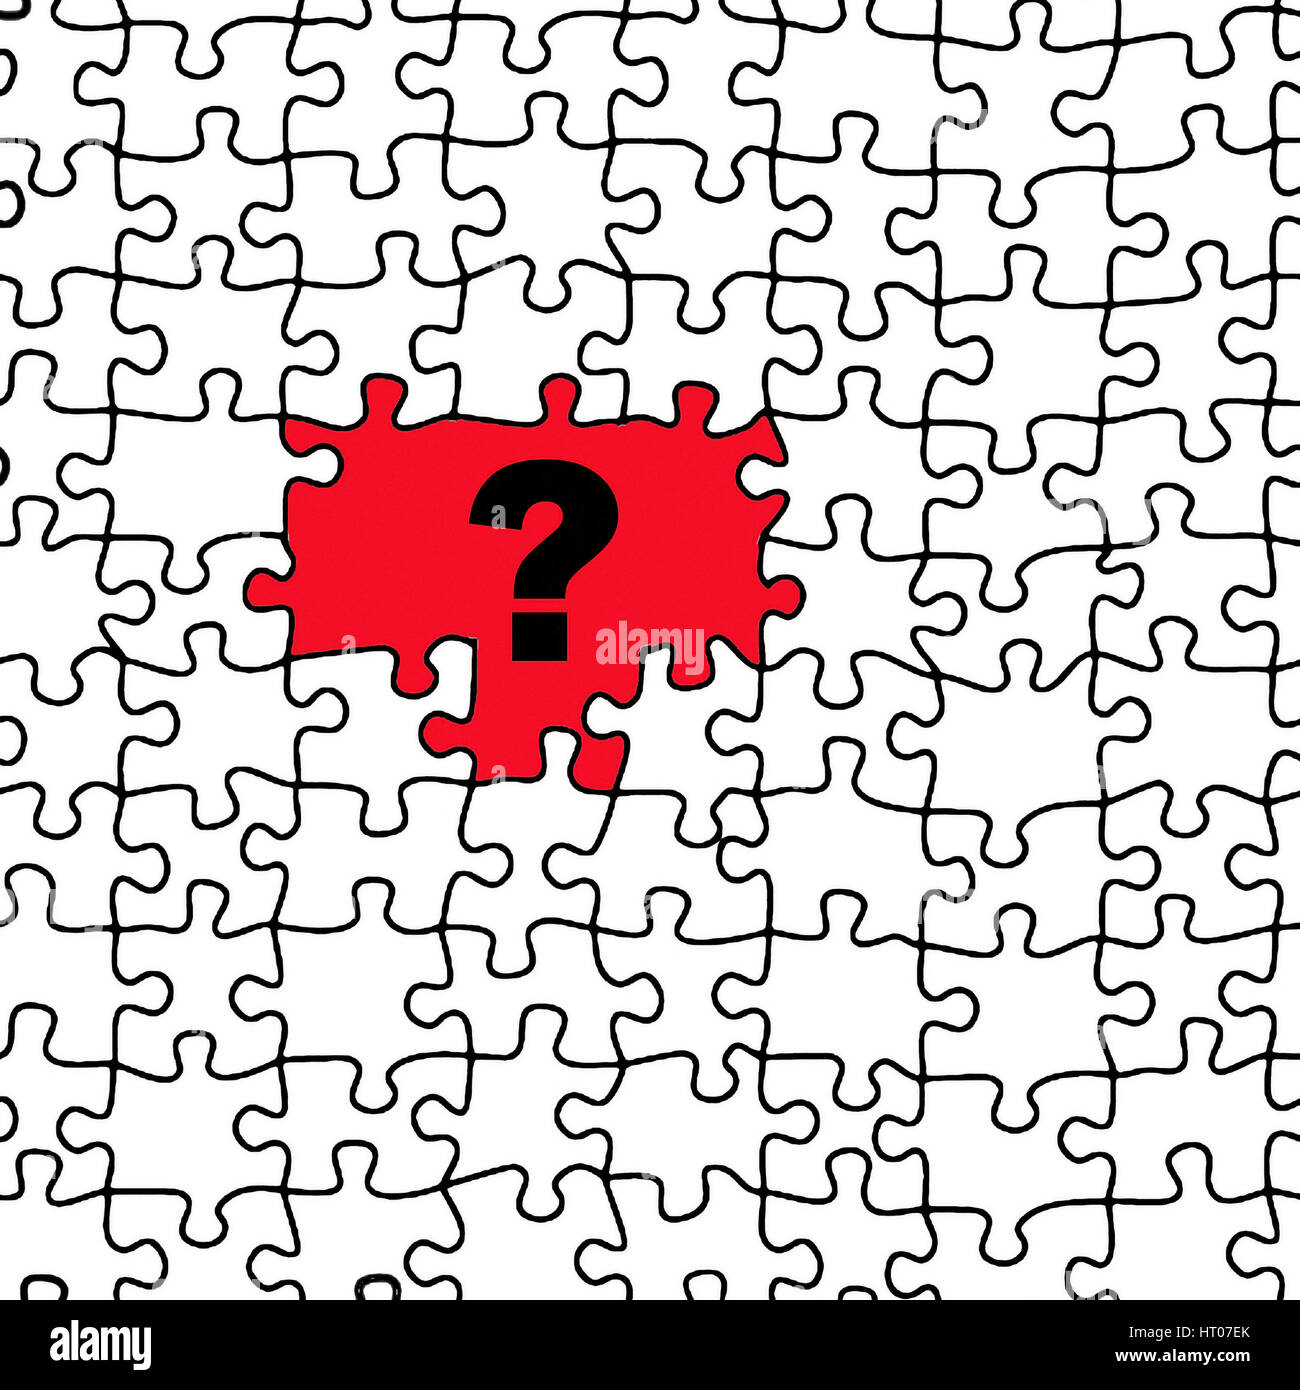 Fragezeichen erscheint in einem Puzzle - Question mark appears in a puzzle Stock Photo